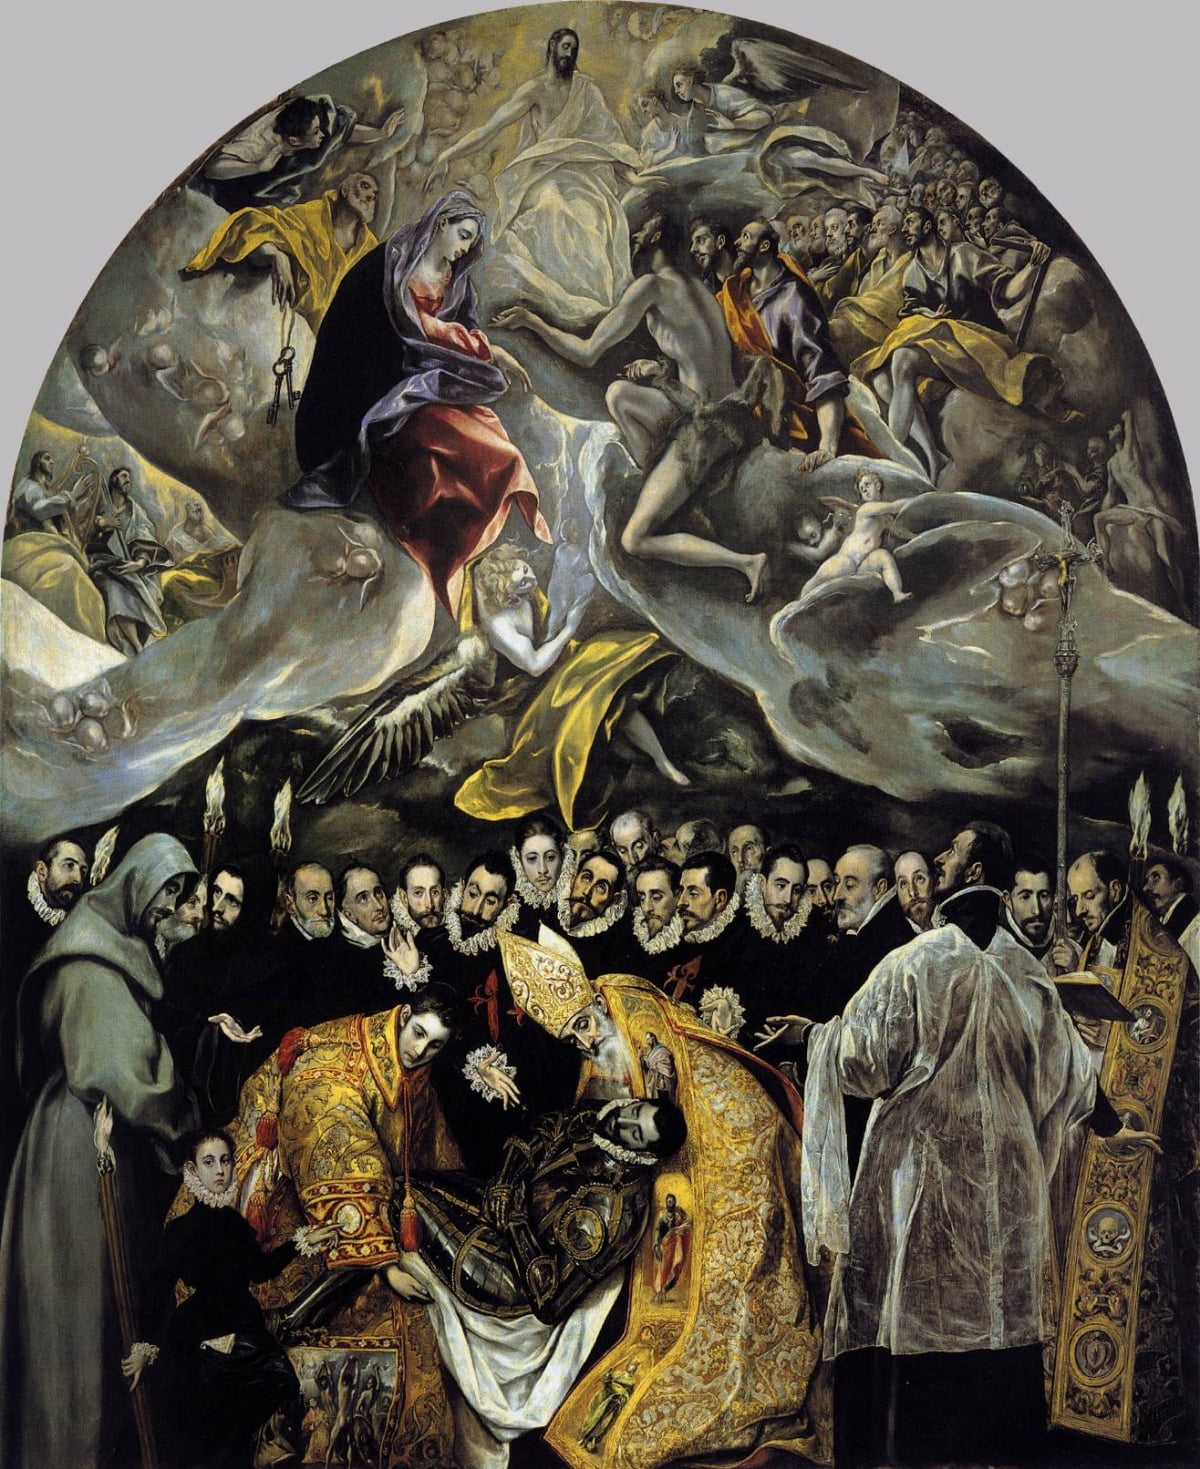 오르가즈 백작의 매장(1586~1588). 엘 그레코의 대표적인 걸작 중 하나로, 피카소를 비롯해 무수히 많은 이들이 이 작품을 보기 위해 스페인으로 '예술 여행'을 감행했다. 왼쪽 앞의 어린아이는 엘 그레코의 아들을 그린 것으로 추정된다. /톨레도 산토 토메 교회